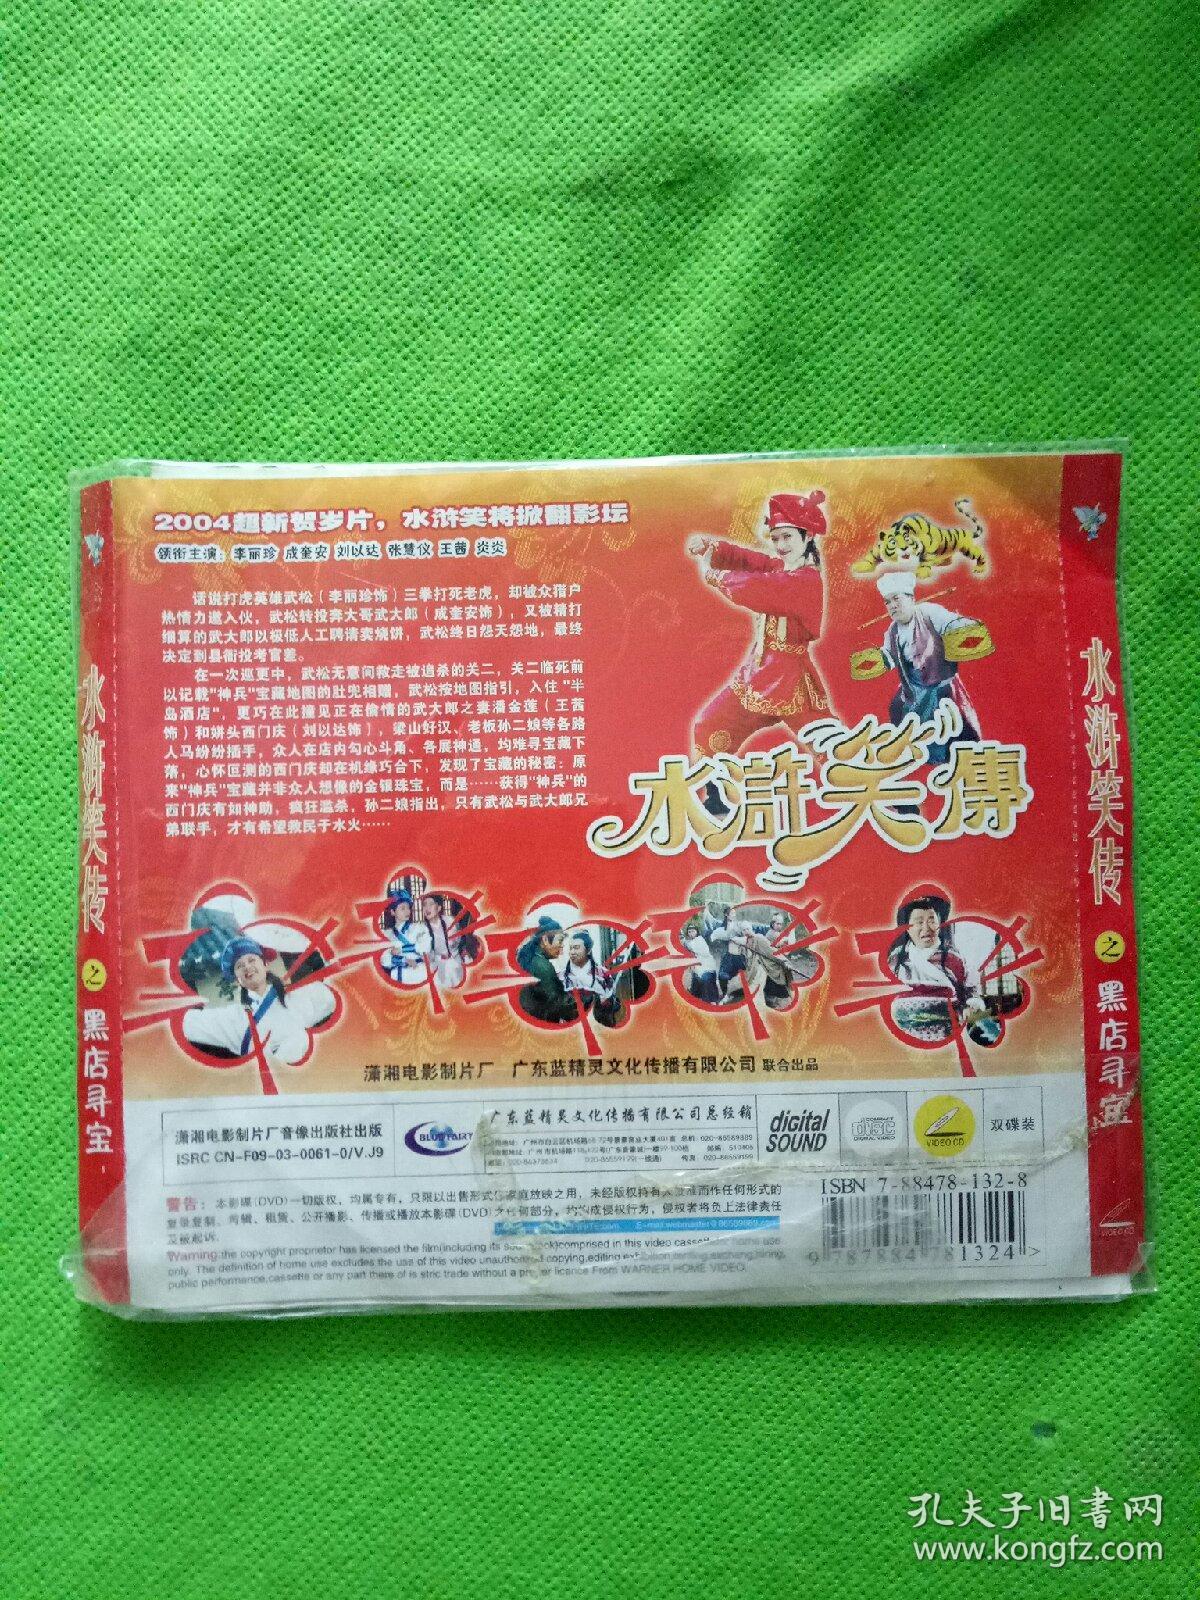 【电影】水浒笑传之黑店寻宝 2CD